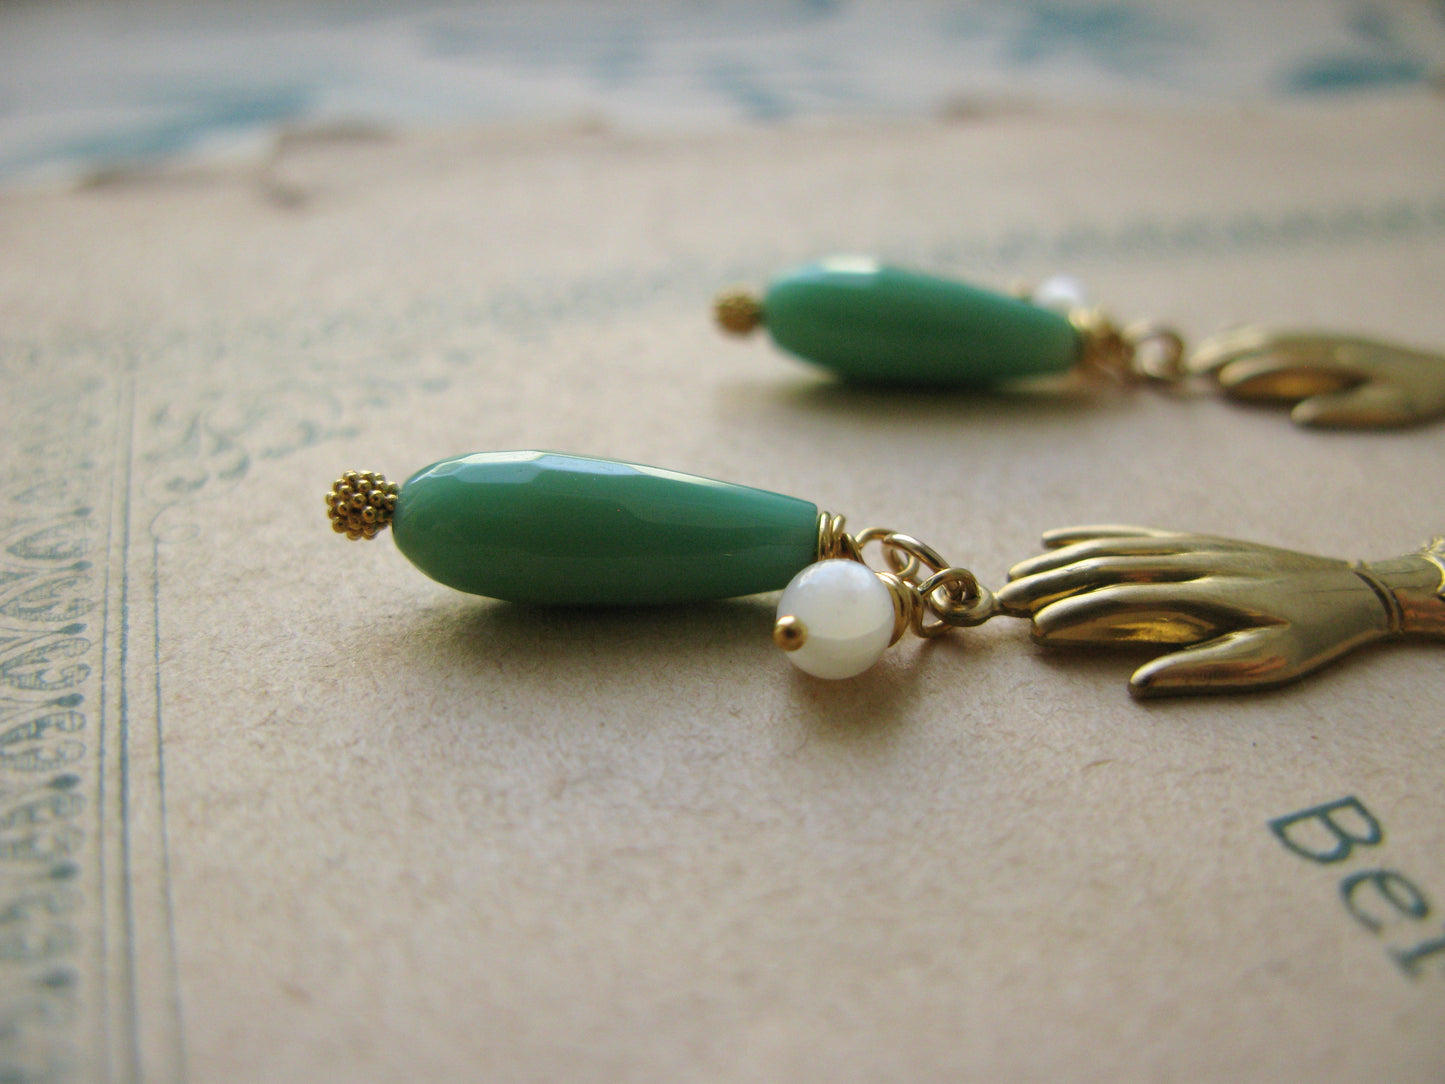 Amitié earrings in green